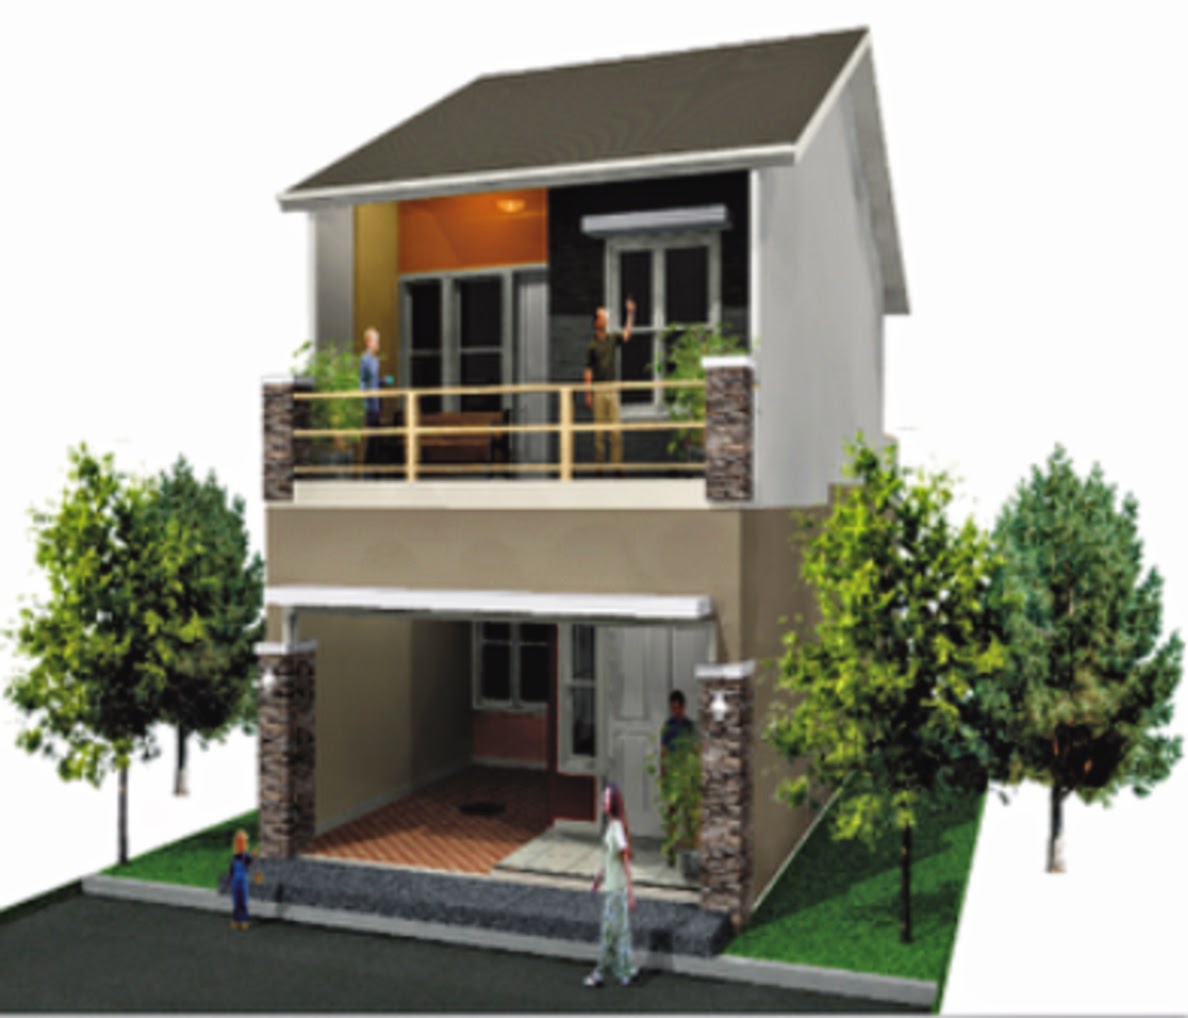 Rumah Minimalis 2 Lantai Type 21 Tahun 2015 Desain Rumah Minimalis